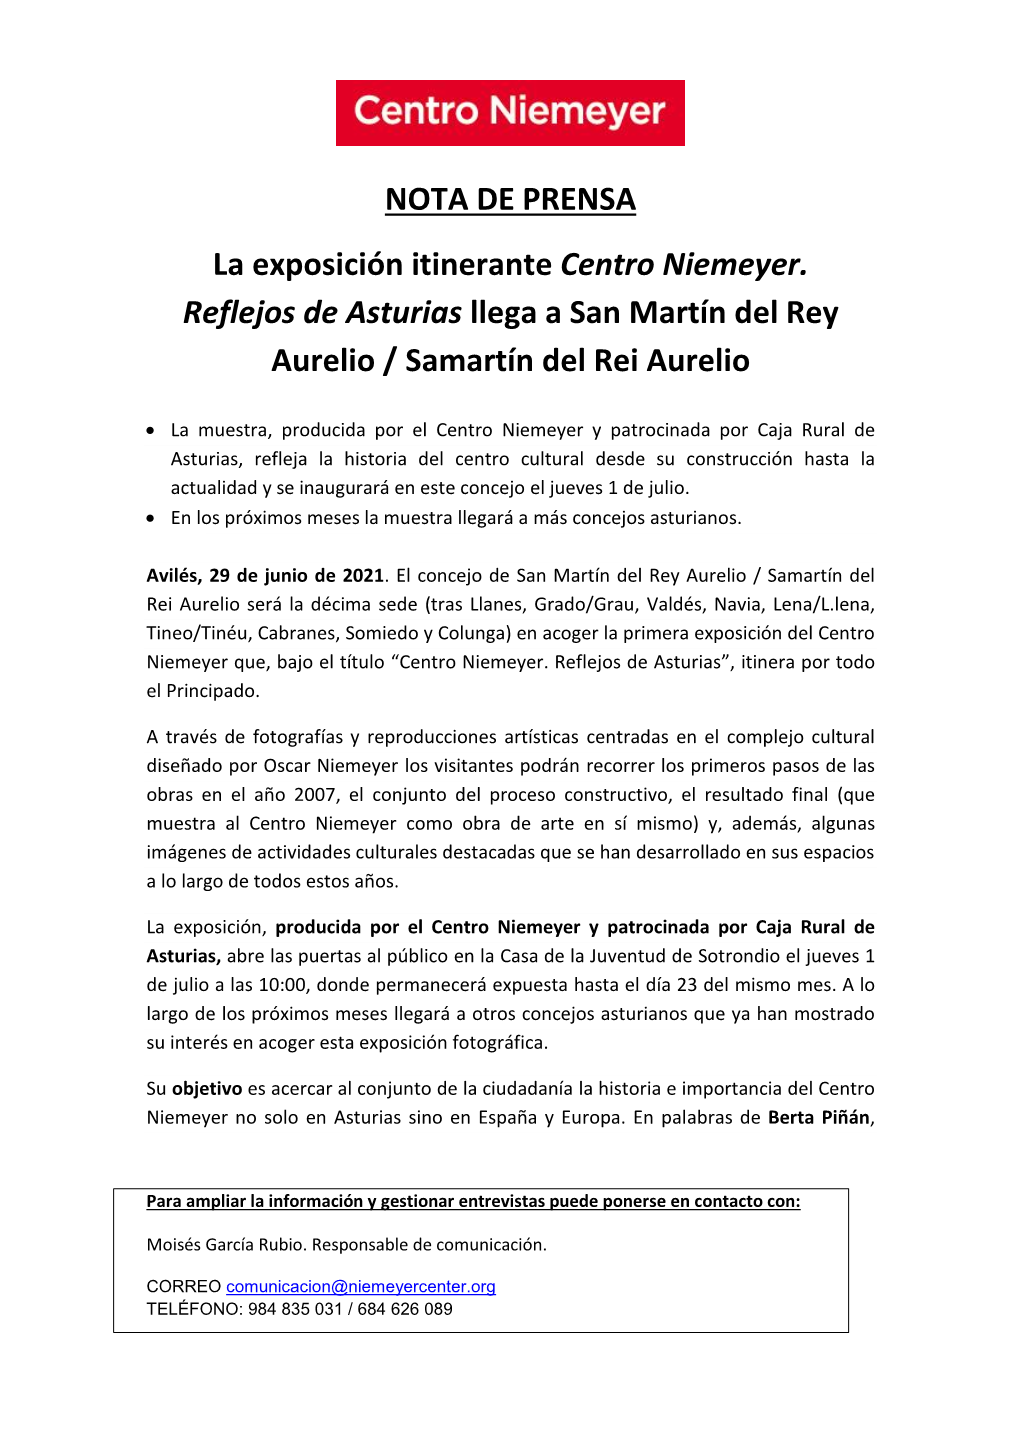 NOTA DE PRENSA La Exposición Itinerante Centro Niemeyer